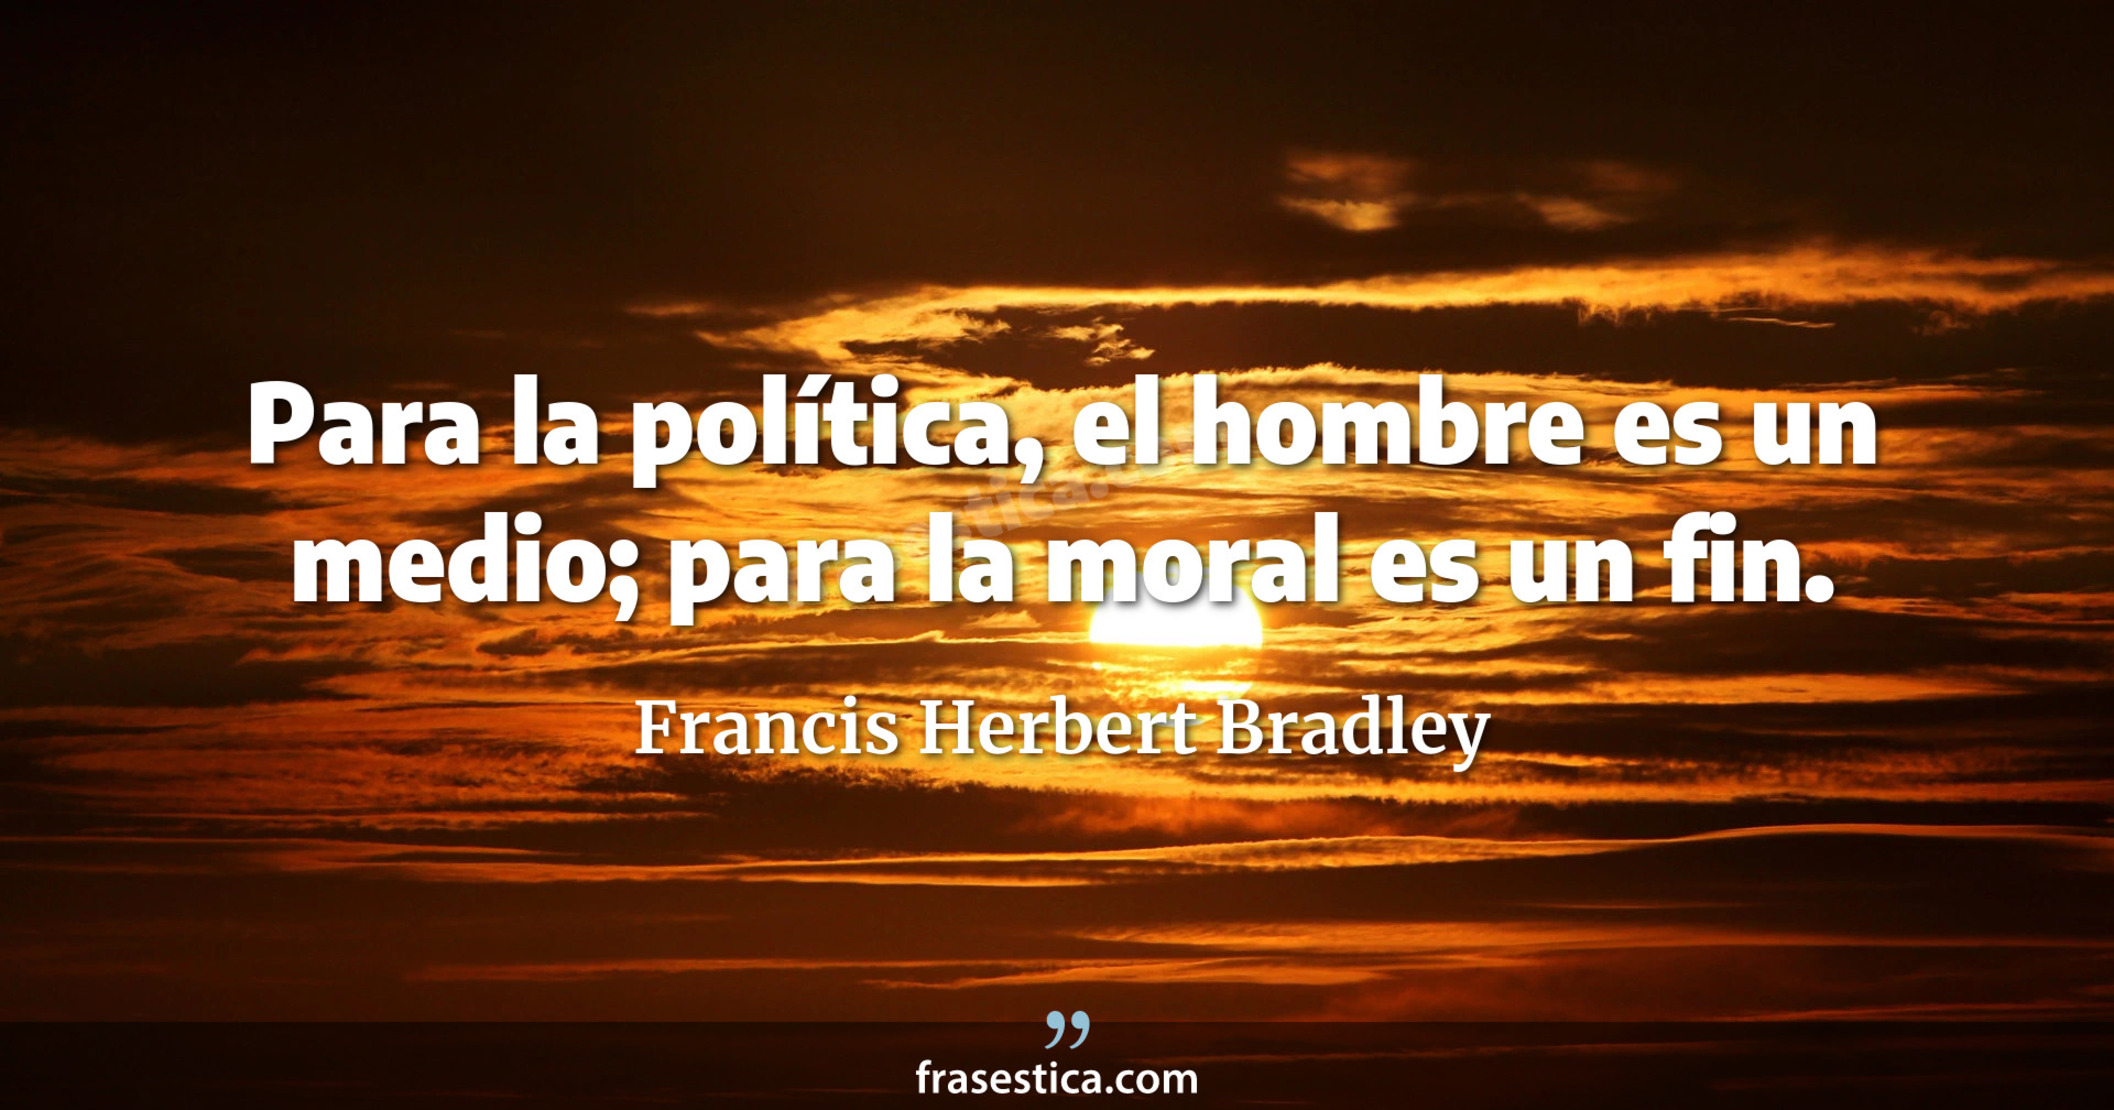 Para la política, el hombre es un medio; para la moral es un fin. - Francis Herbert Bradley